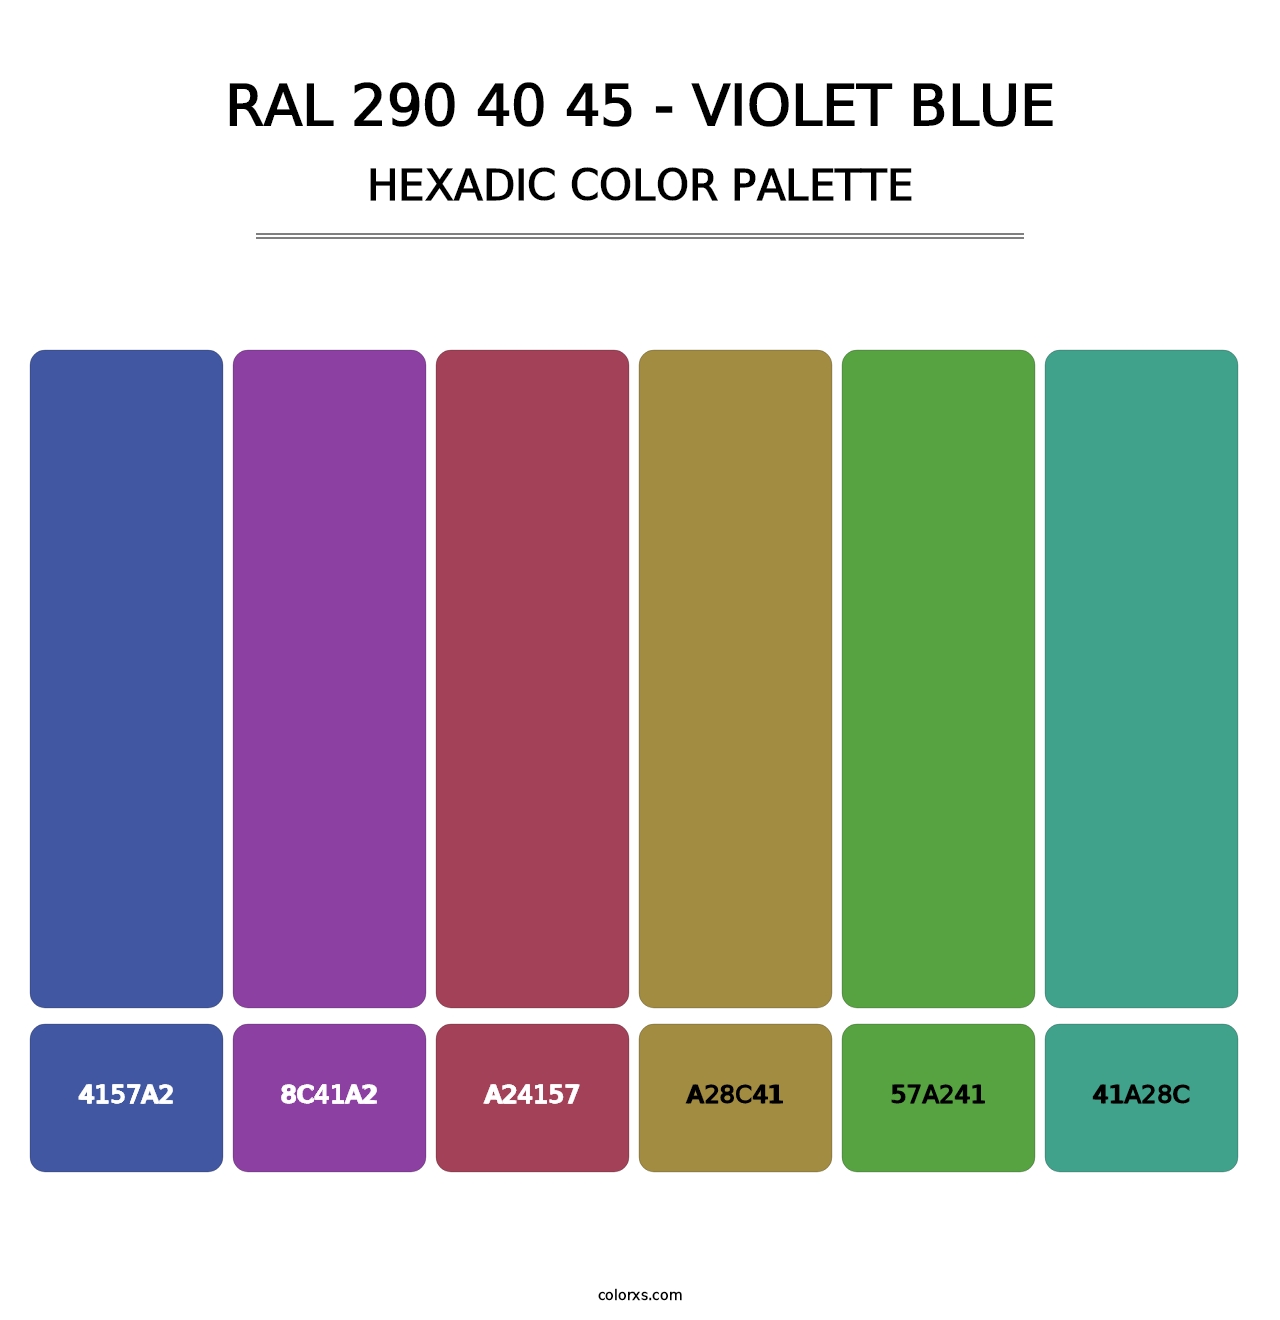 RAL 290 40 45 - Violet Blue - Hexadic Color Palette